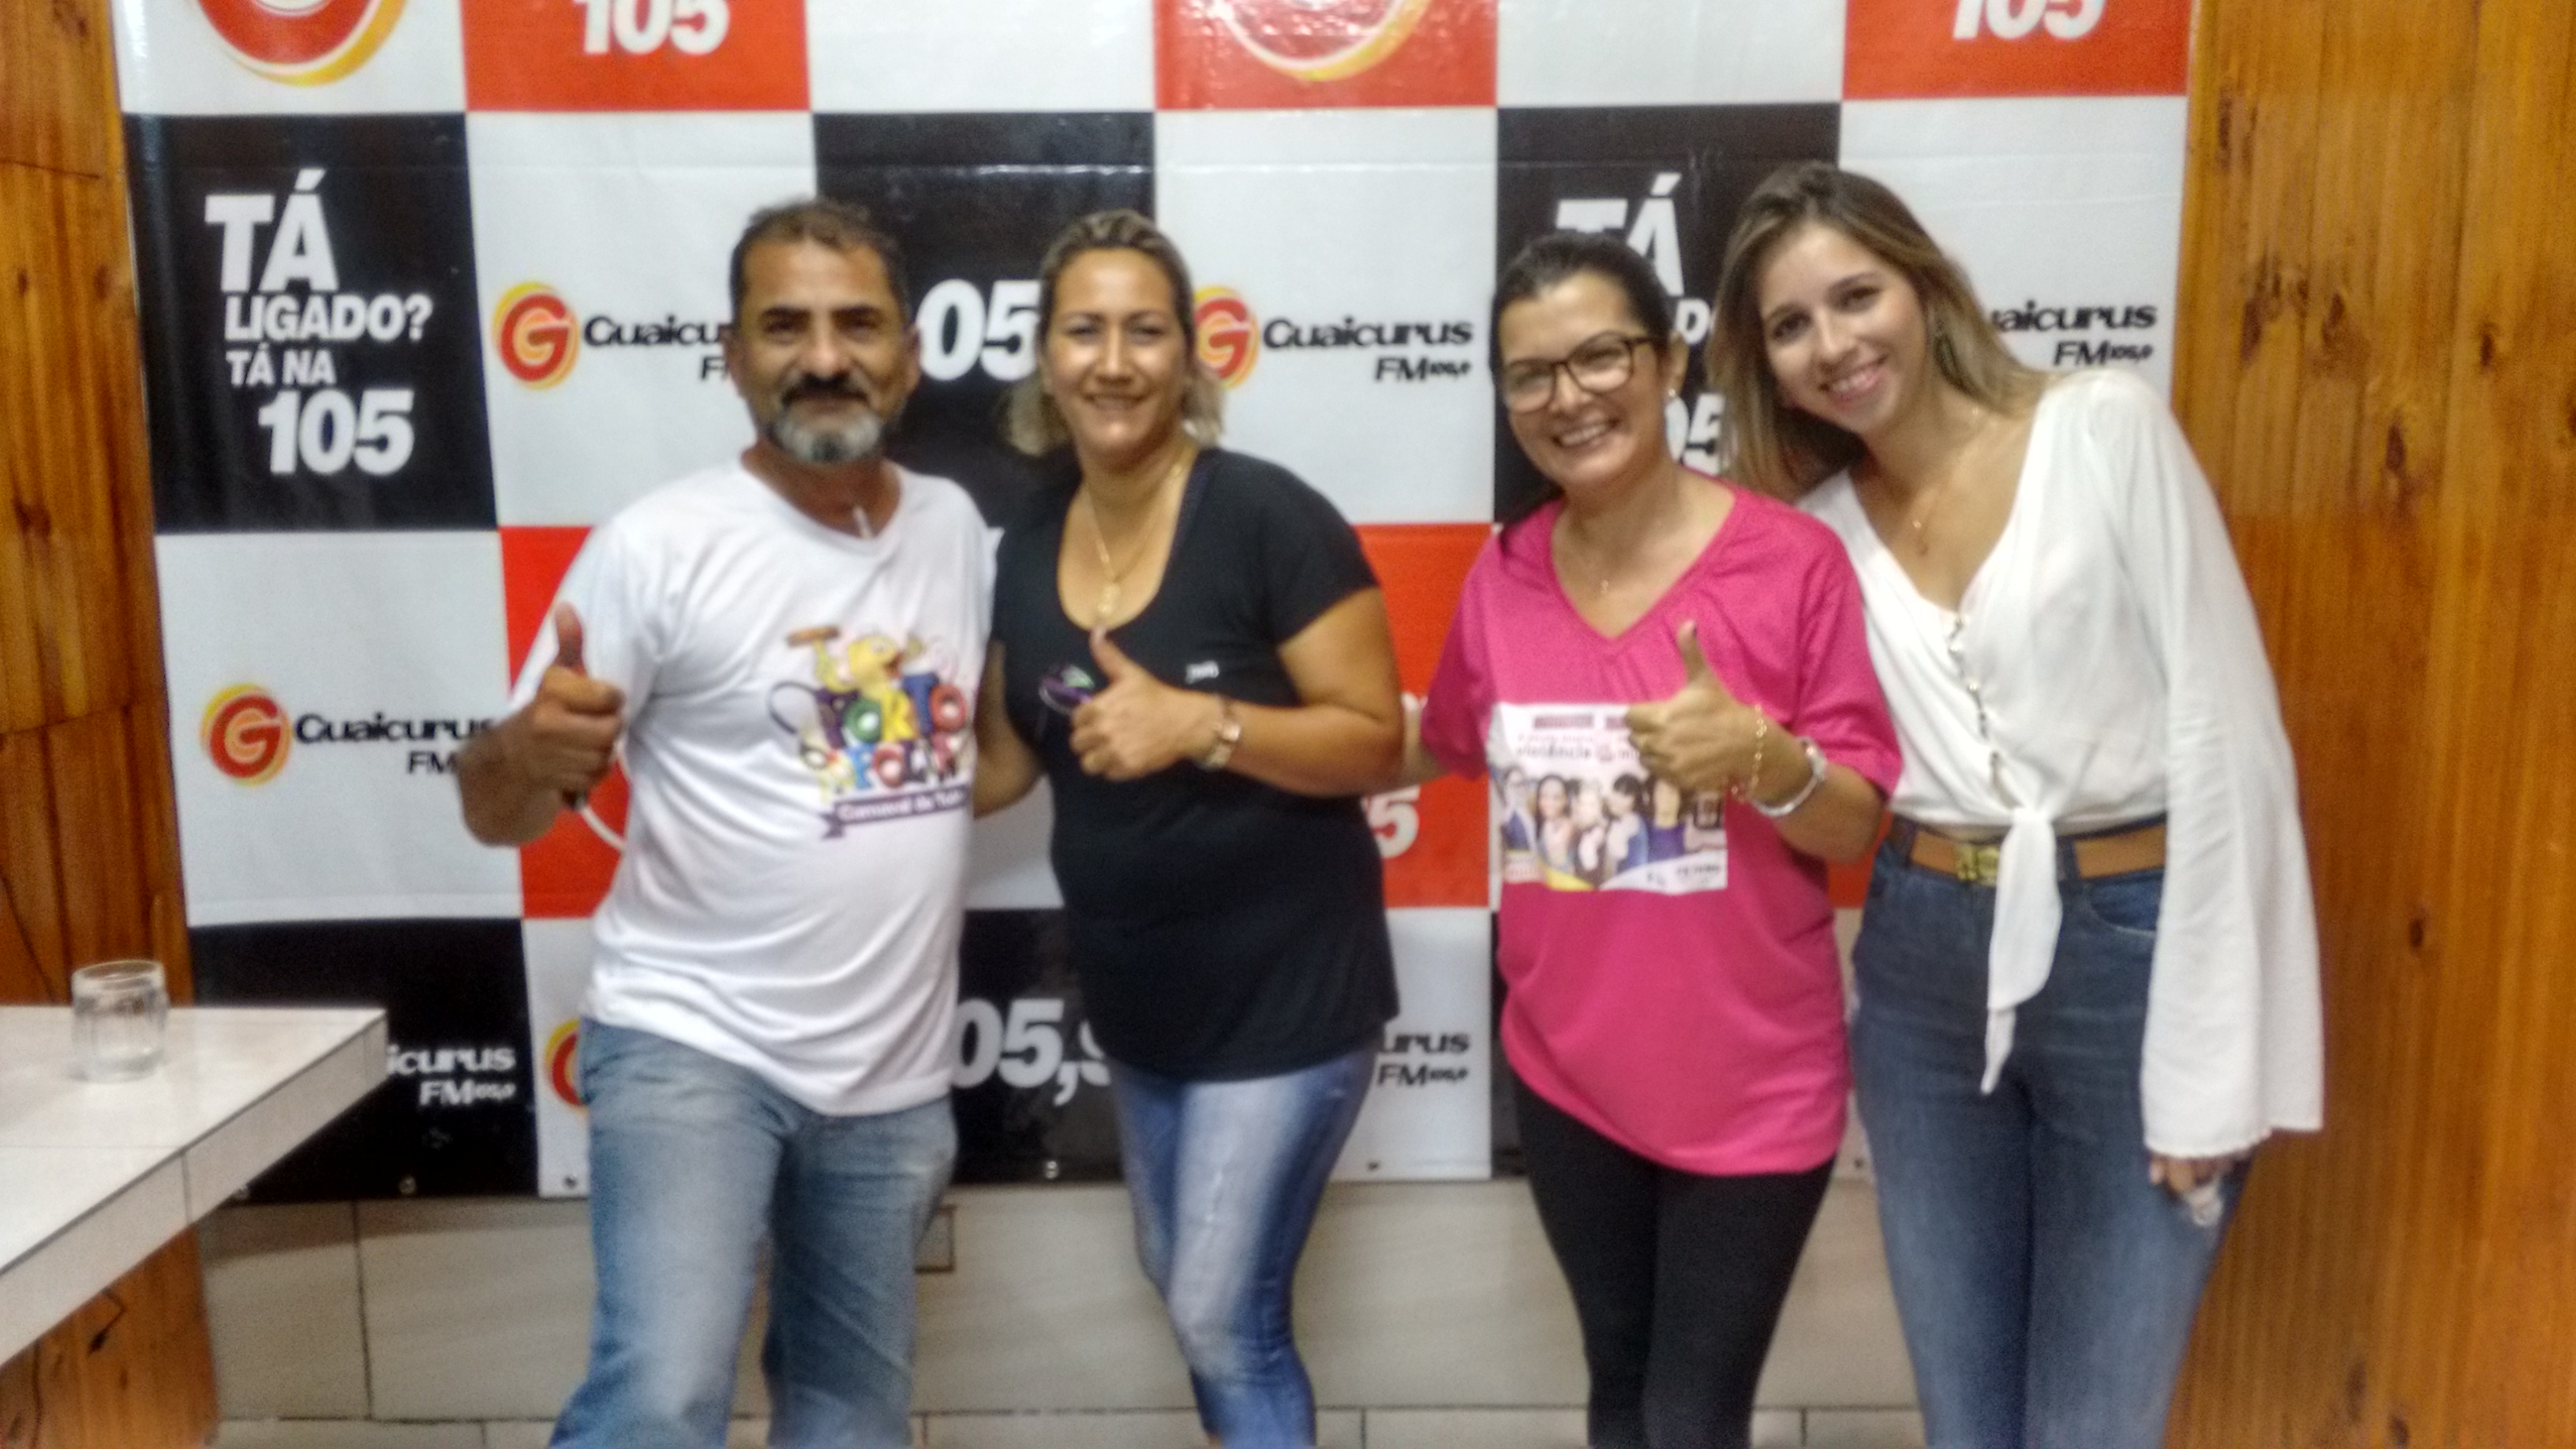 Vereadoras prestam homenagens as mulheres na rádio Guaicurus FM